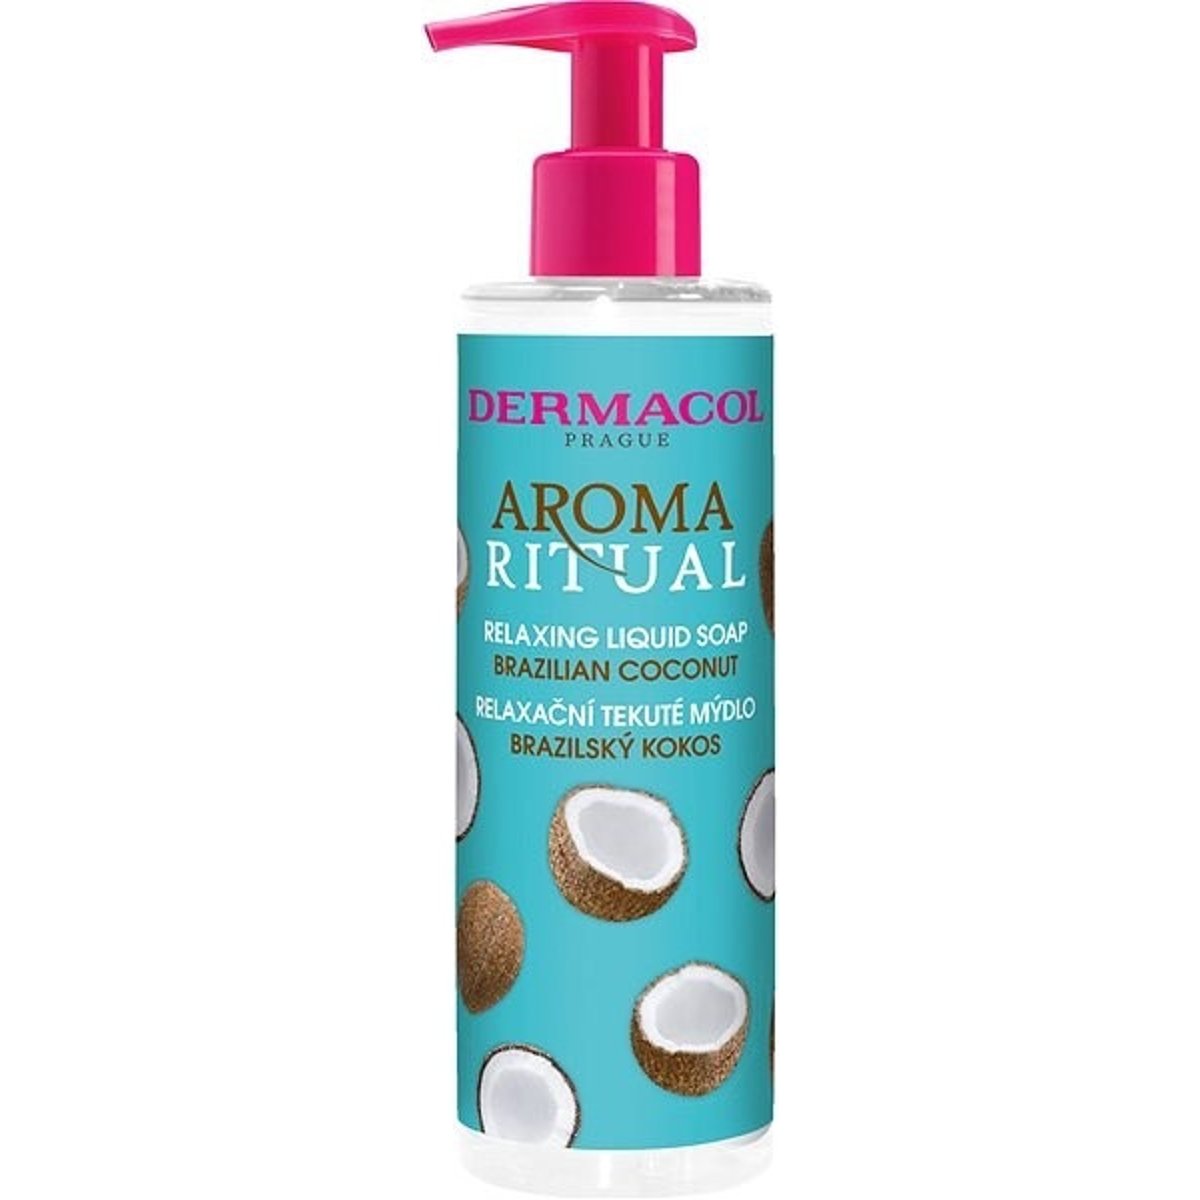 Dermacol Aroma ritual Relaxační tekuté mýdlo brazilský kokos